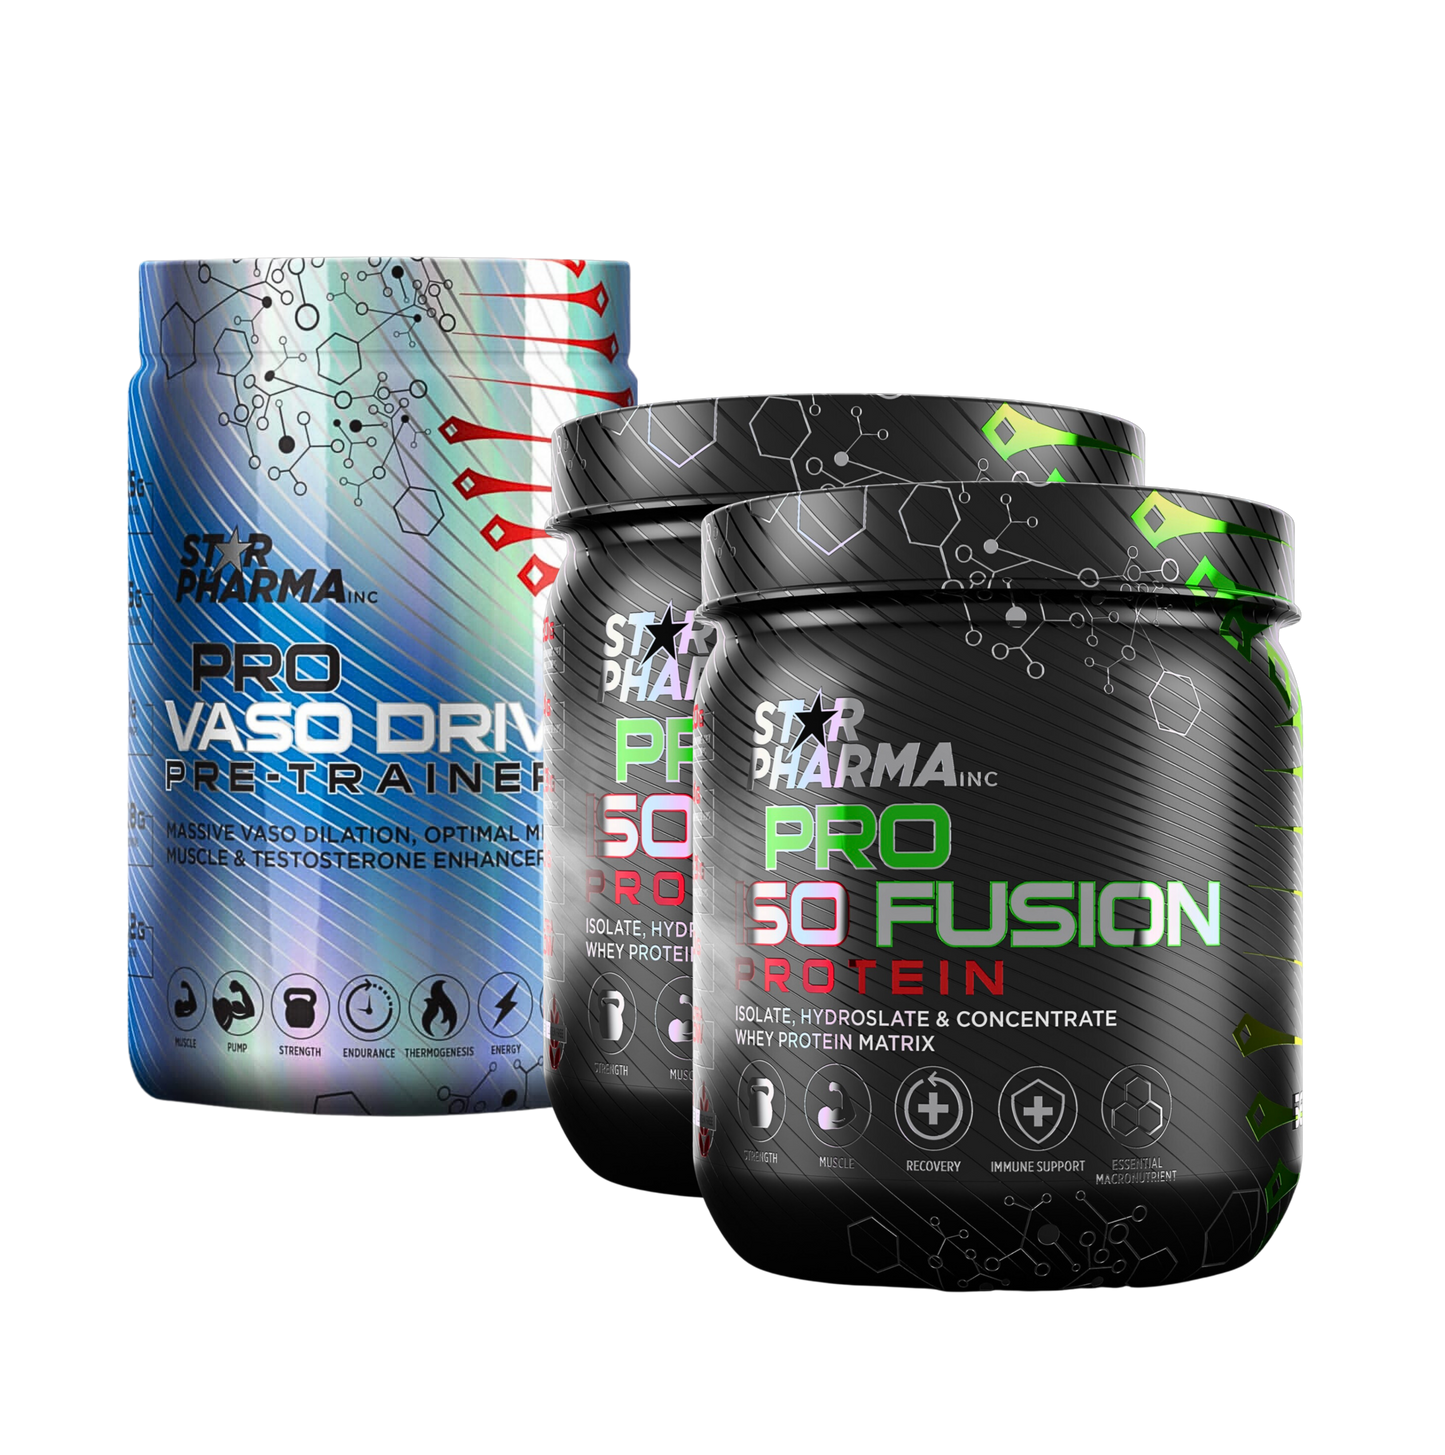 Pro Vaso Drive Pre-Trainer + 2 Pro Iso Fusion Protein